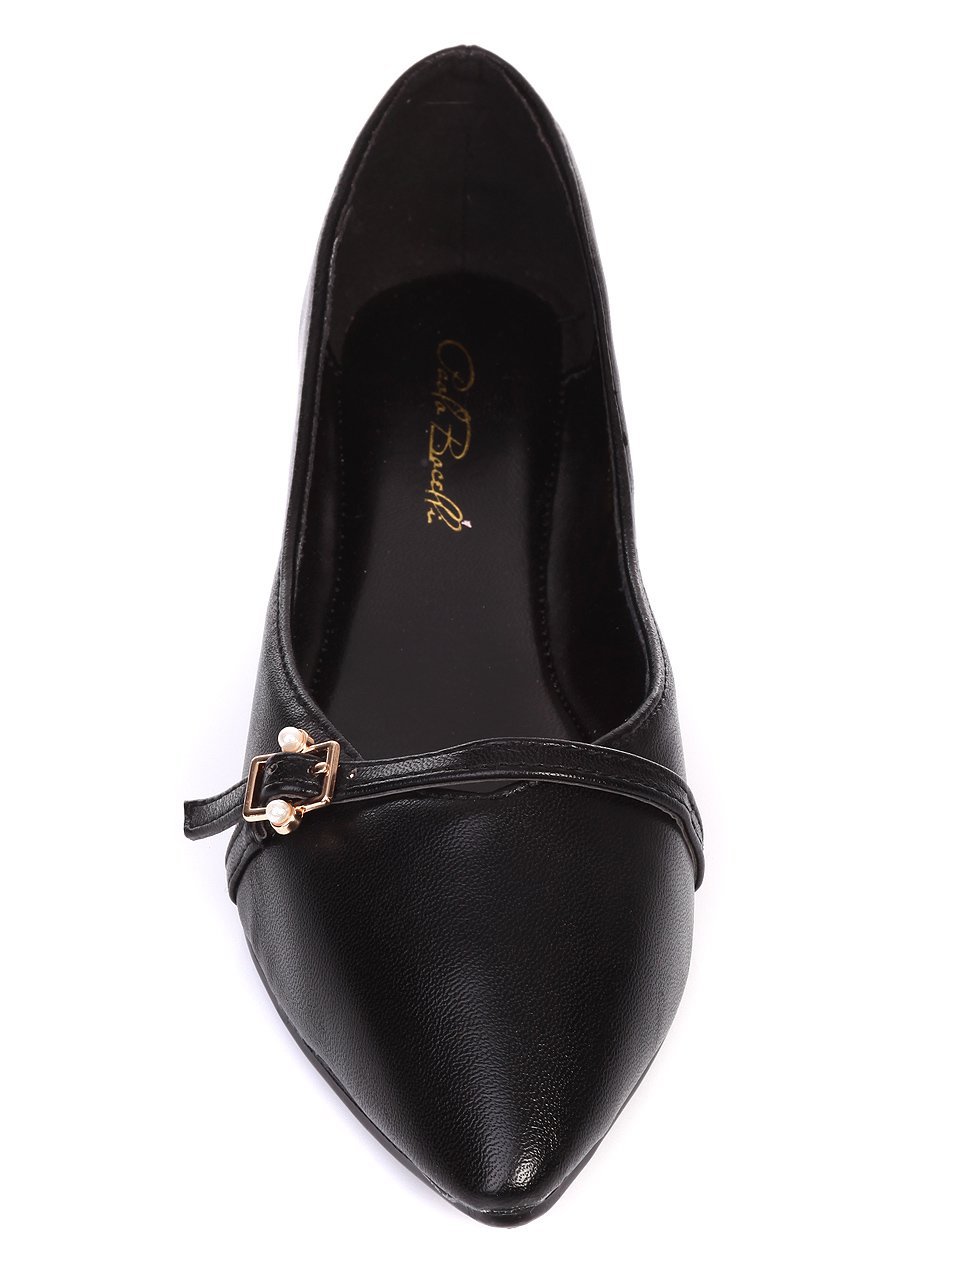 Ежедневни дамски обувки в черно 3B-17247 black